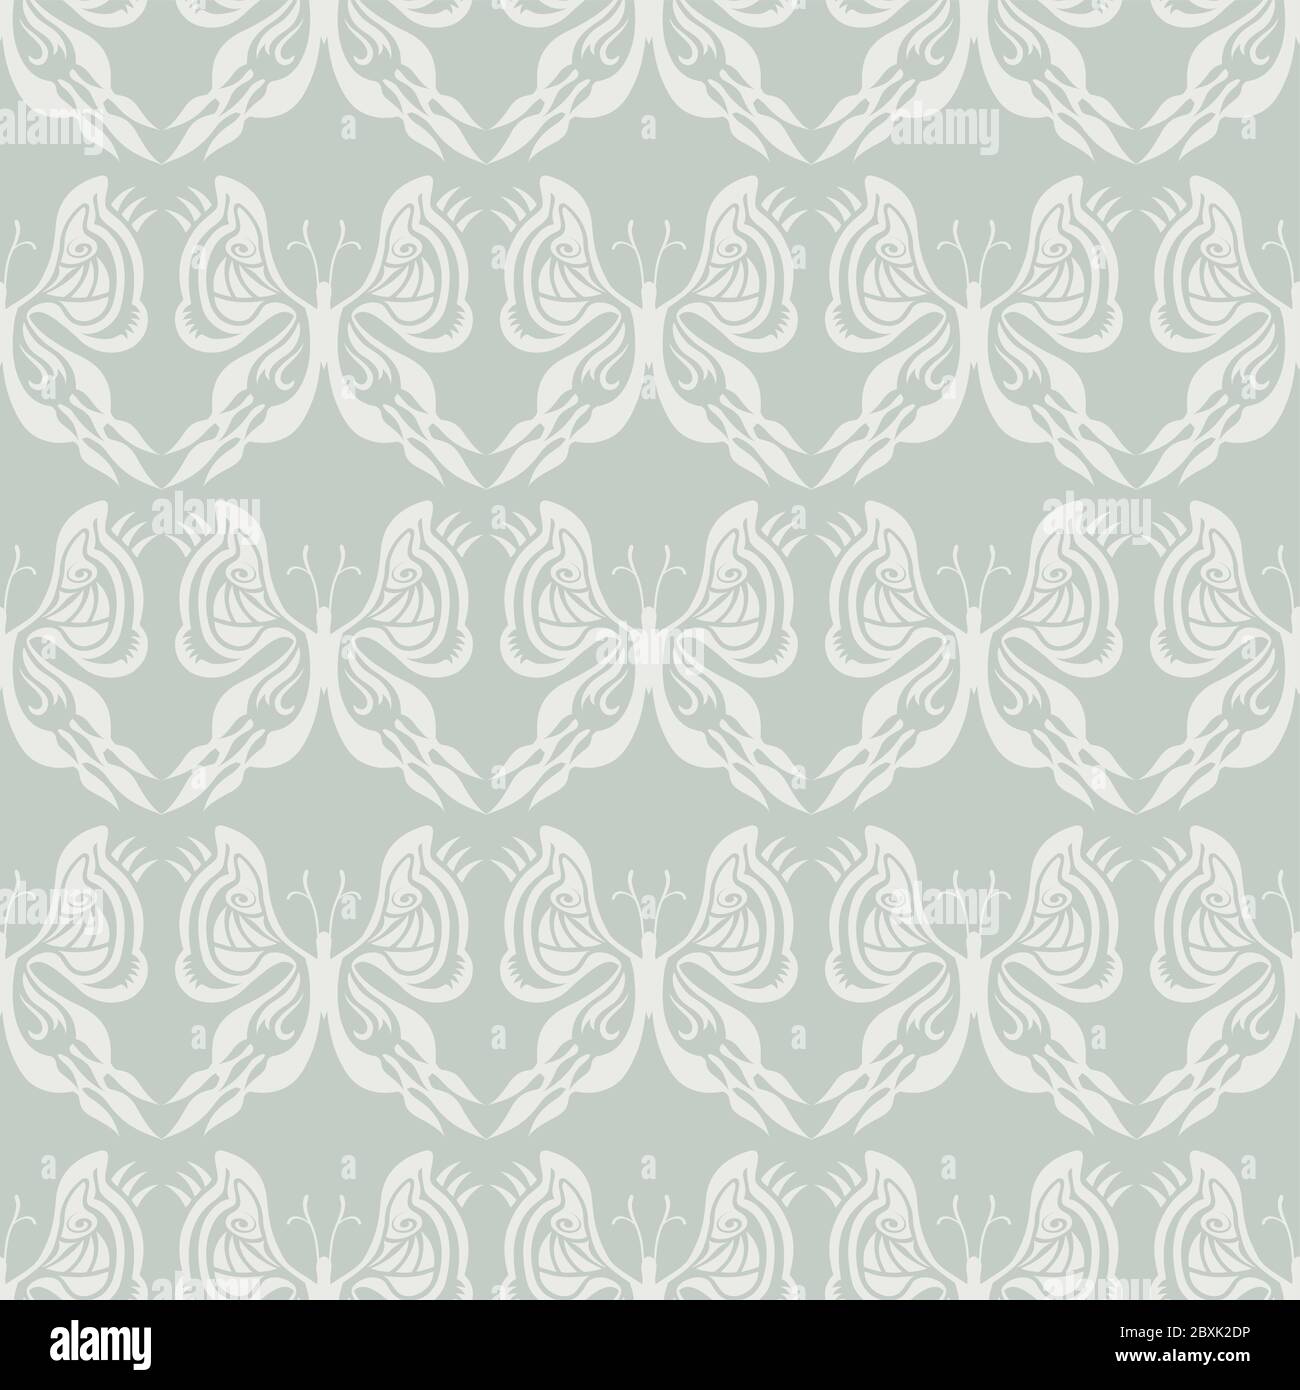 Motif papillon sans couture - blanc sur beige / fond gris - illusion optique Illustration de Vecteur